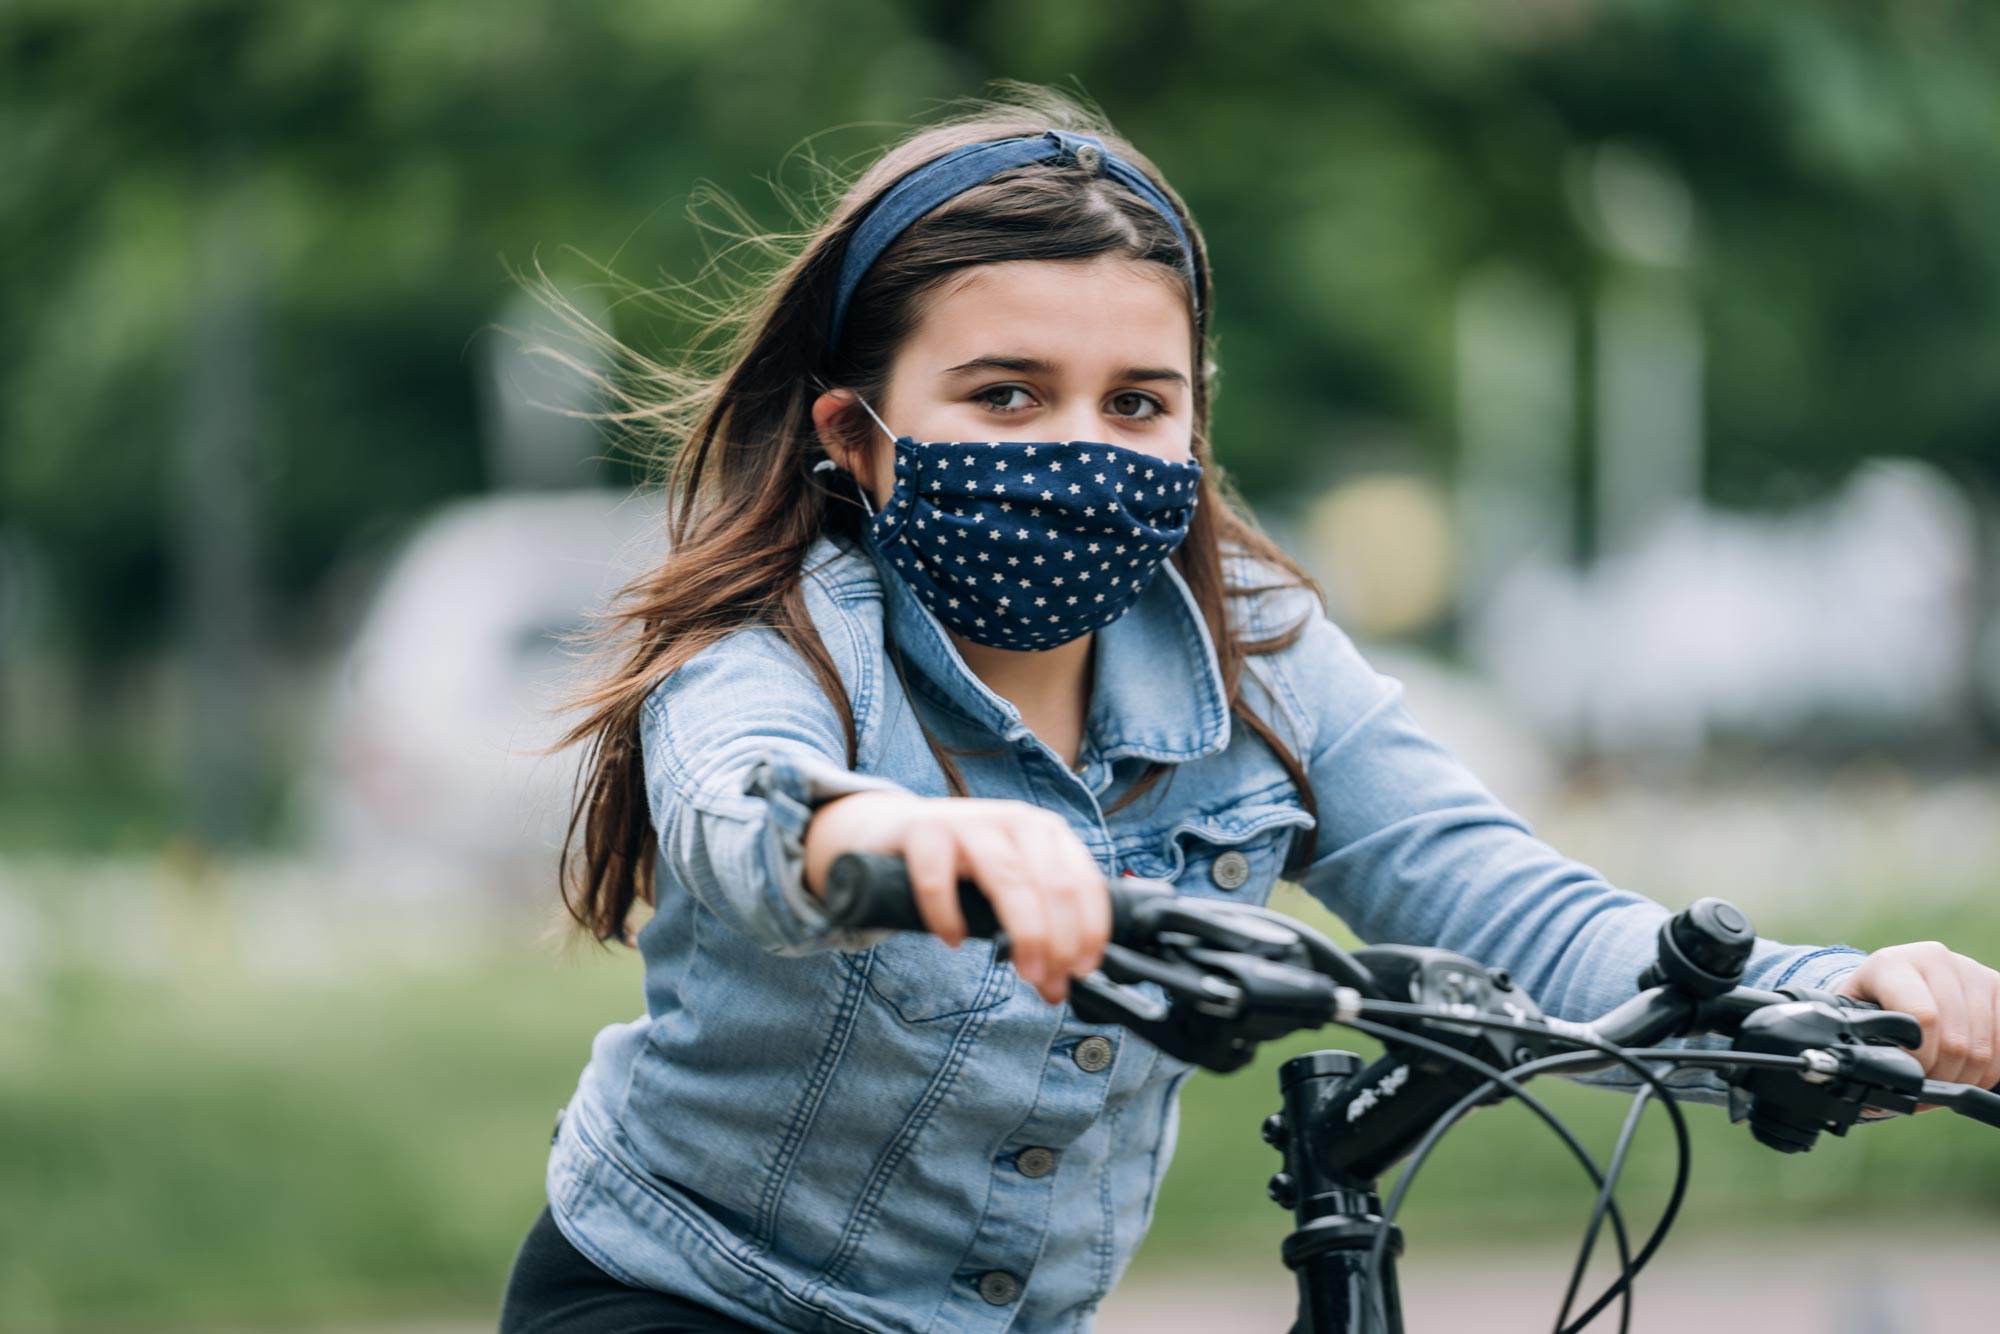 Child wearing a mask riding a bike outside